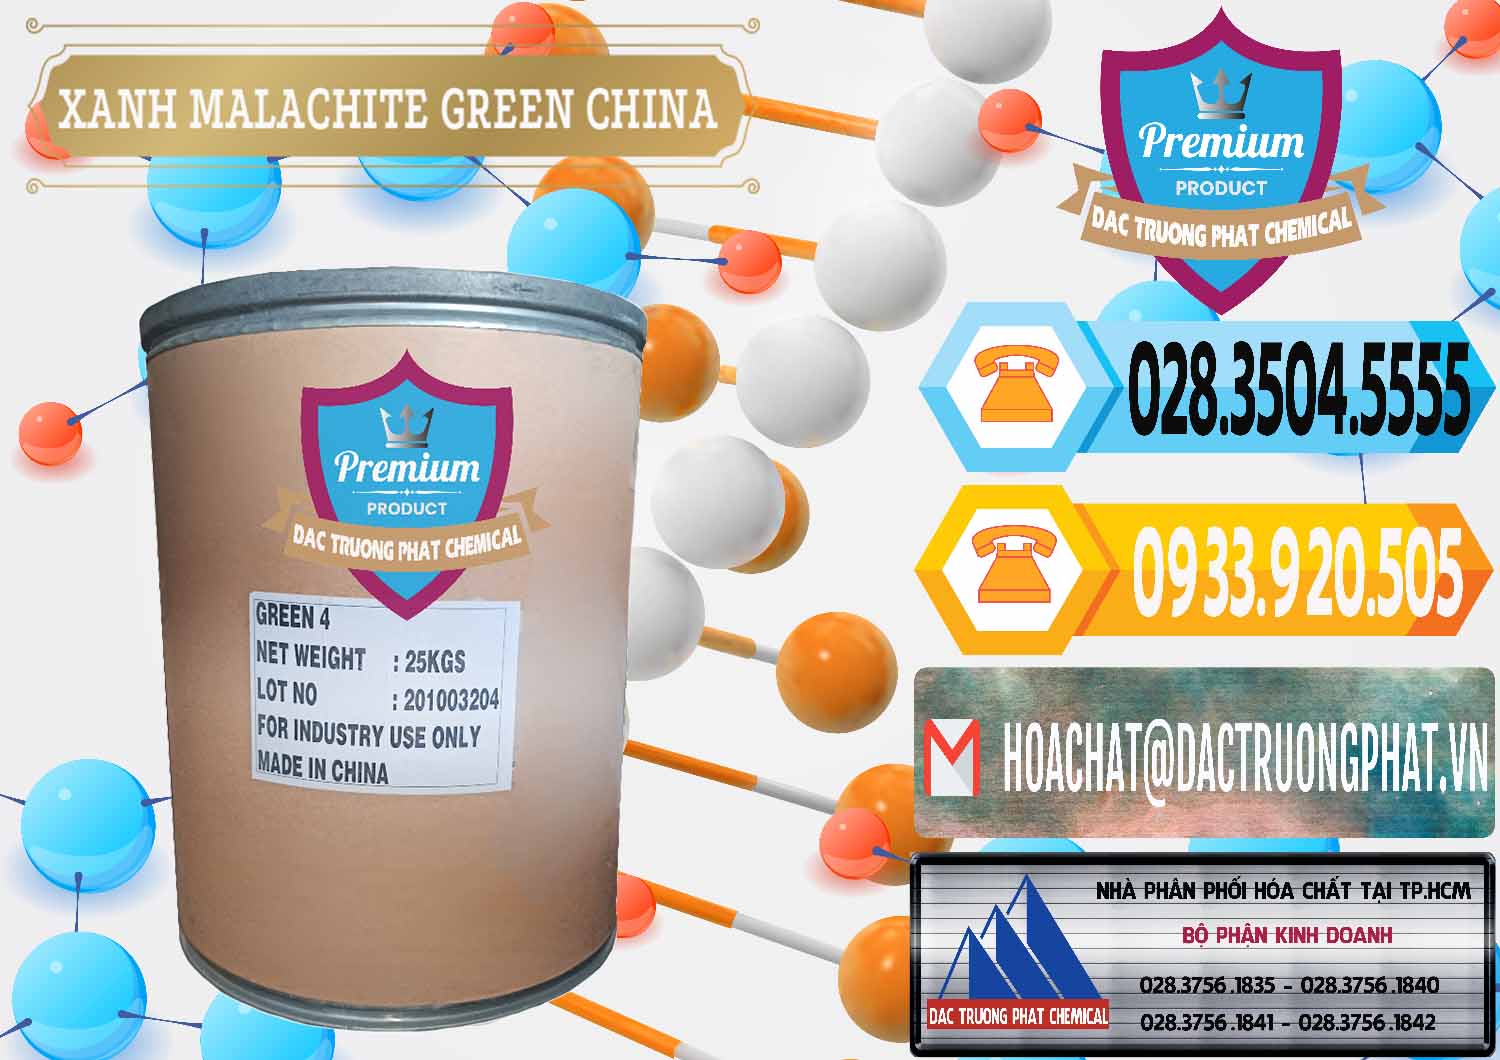 Công ty bán ( cung cấp ) Xanh Malachite Green Trung Quốc China - 0325 - Cung cấp và phân phối hóa chất tại TP.HCM - hoachattayrua.net